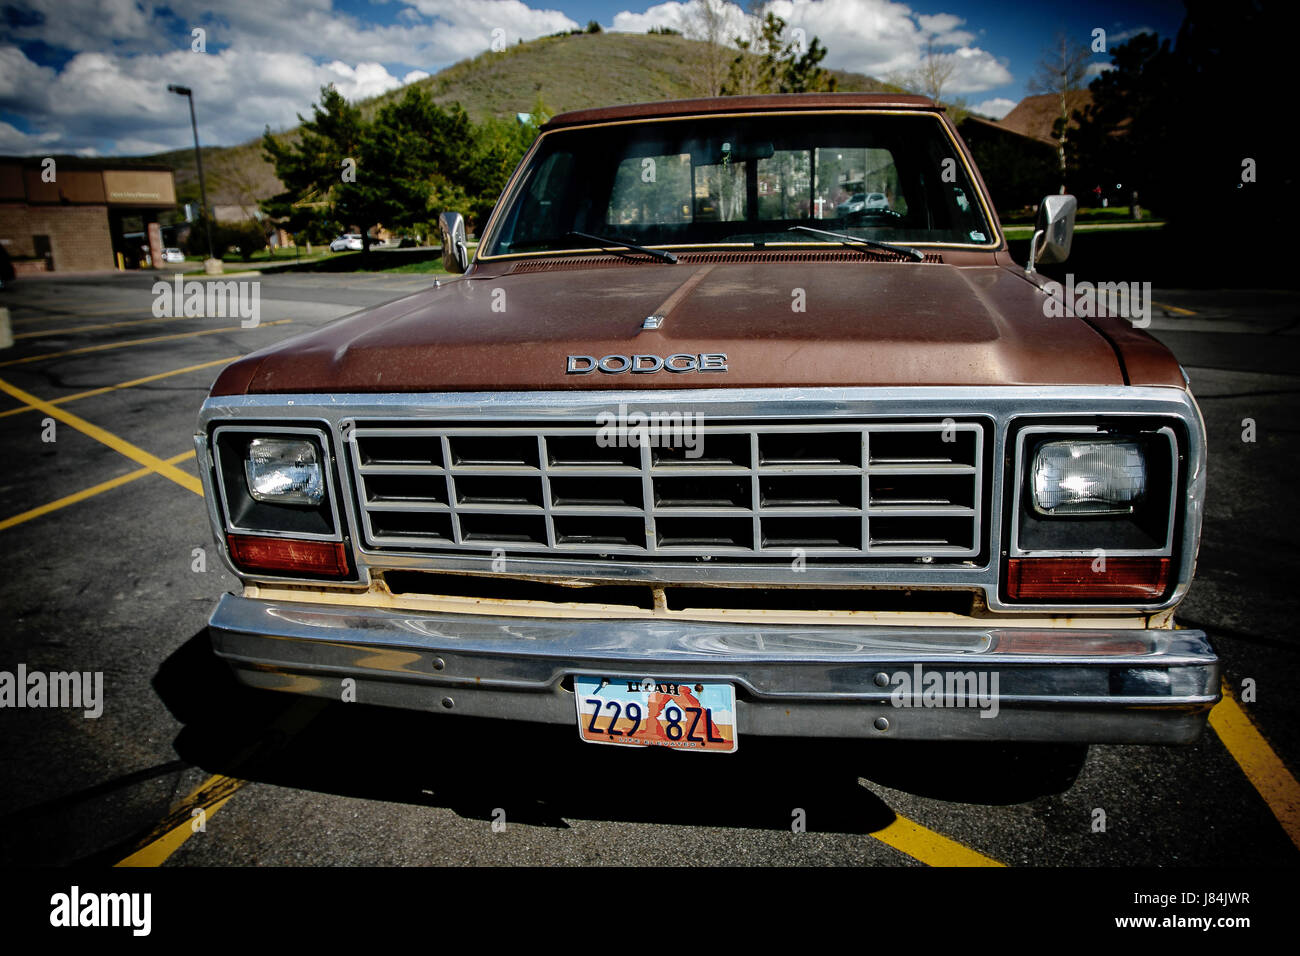 Park City, Utah, 12 mai 2017 : vieille Dodge camion est garé dans un lot. Banque D'Images